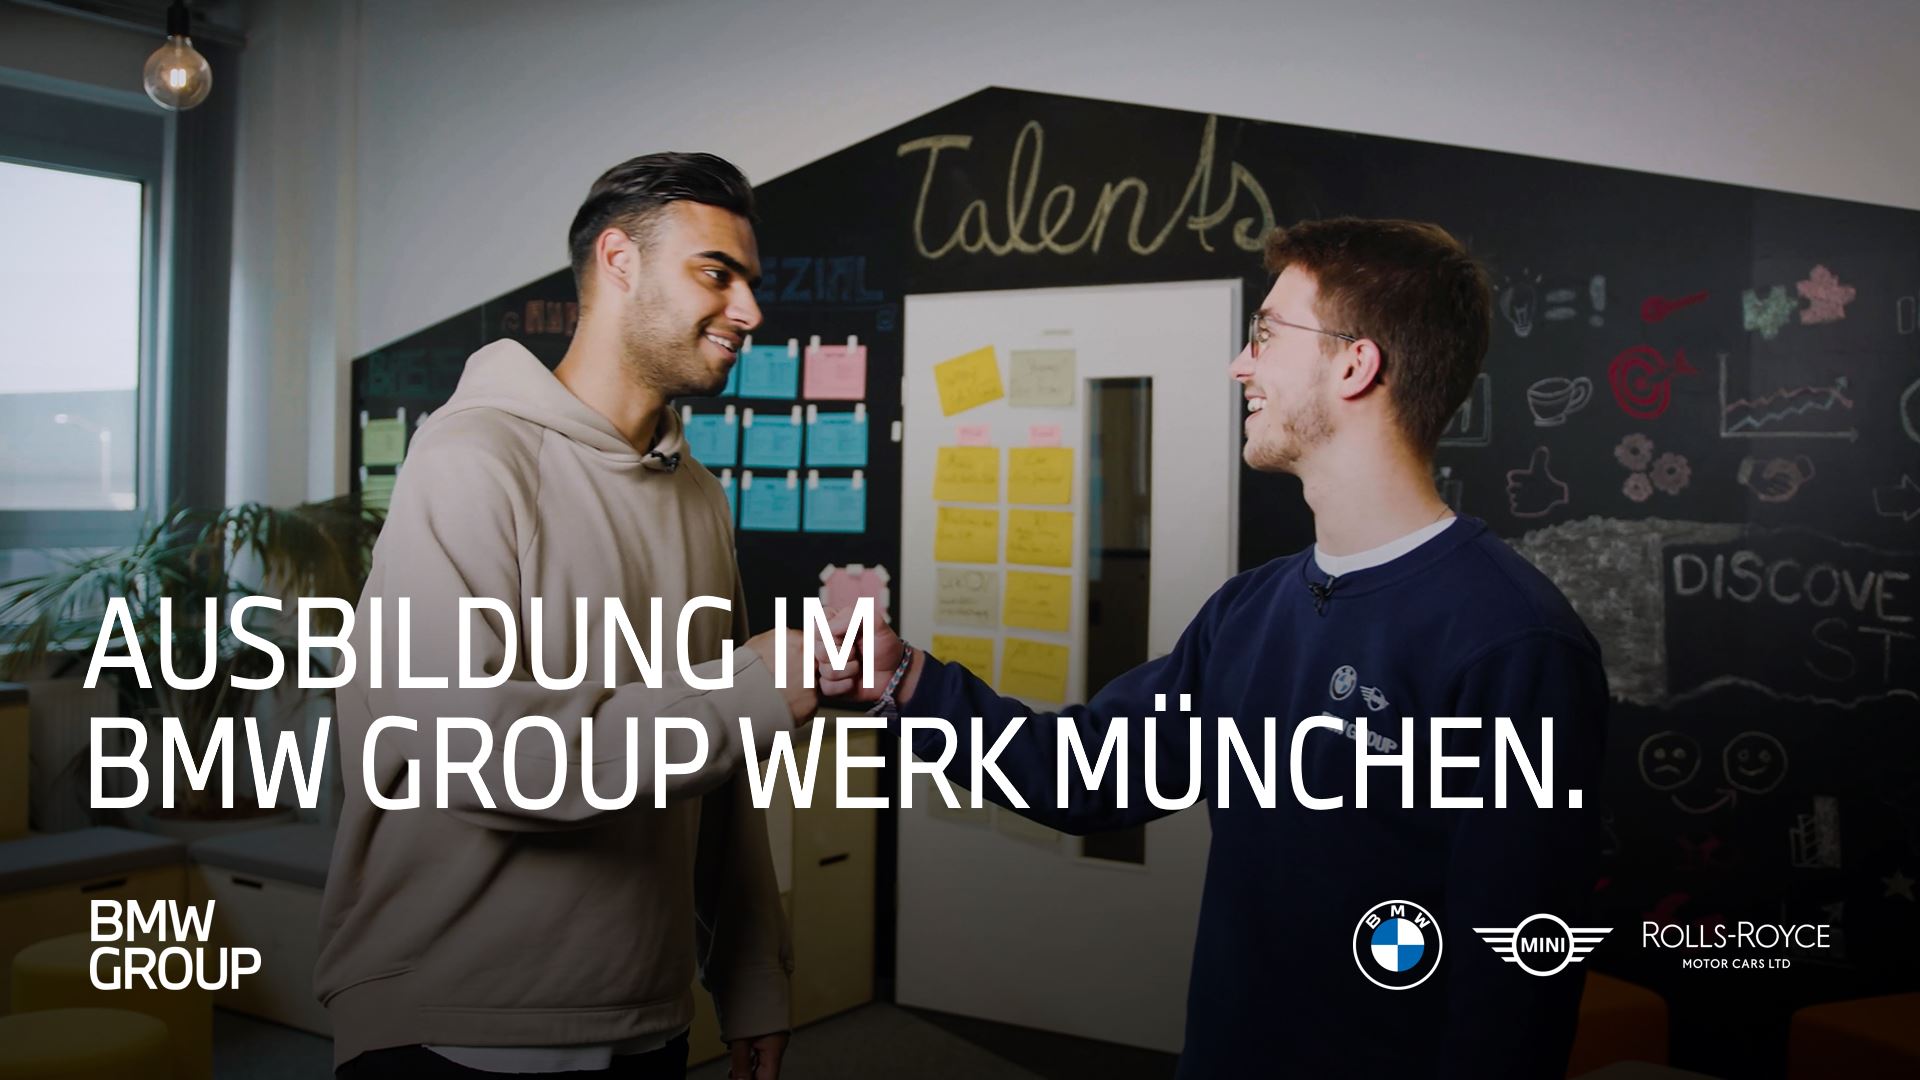 Video über die Ausbildung im Werk München.